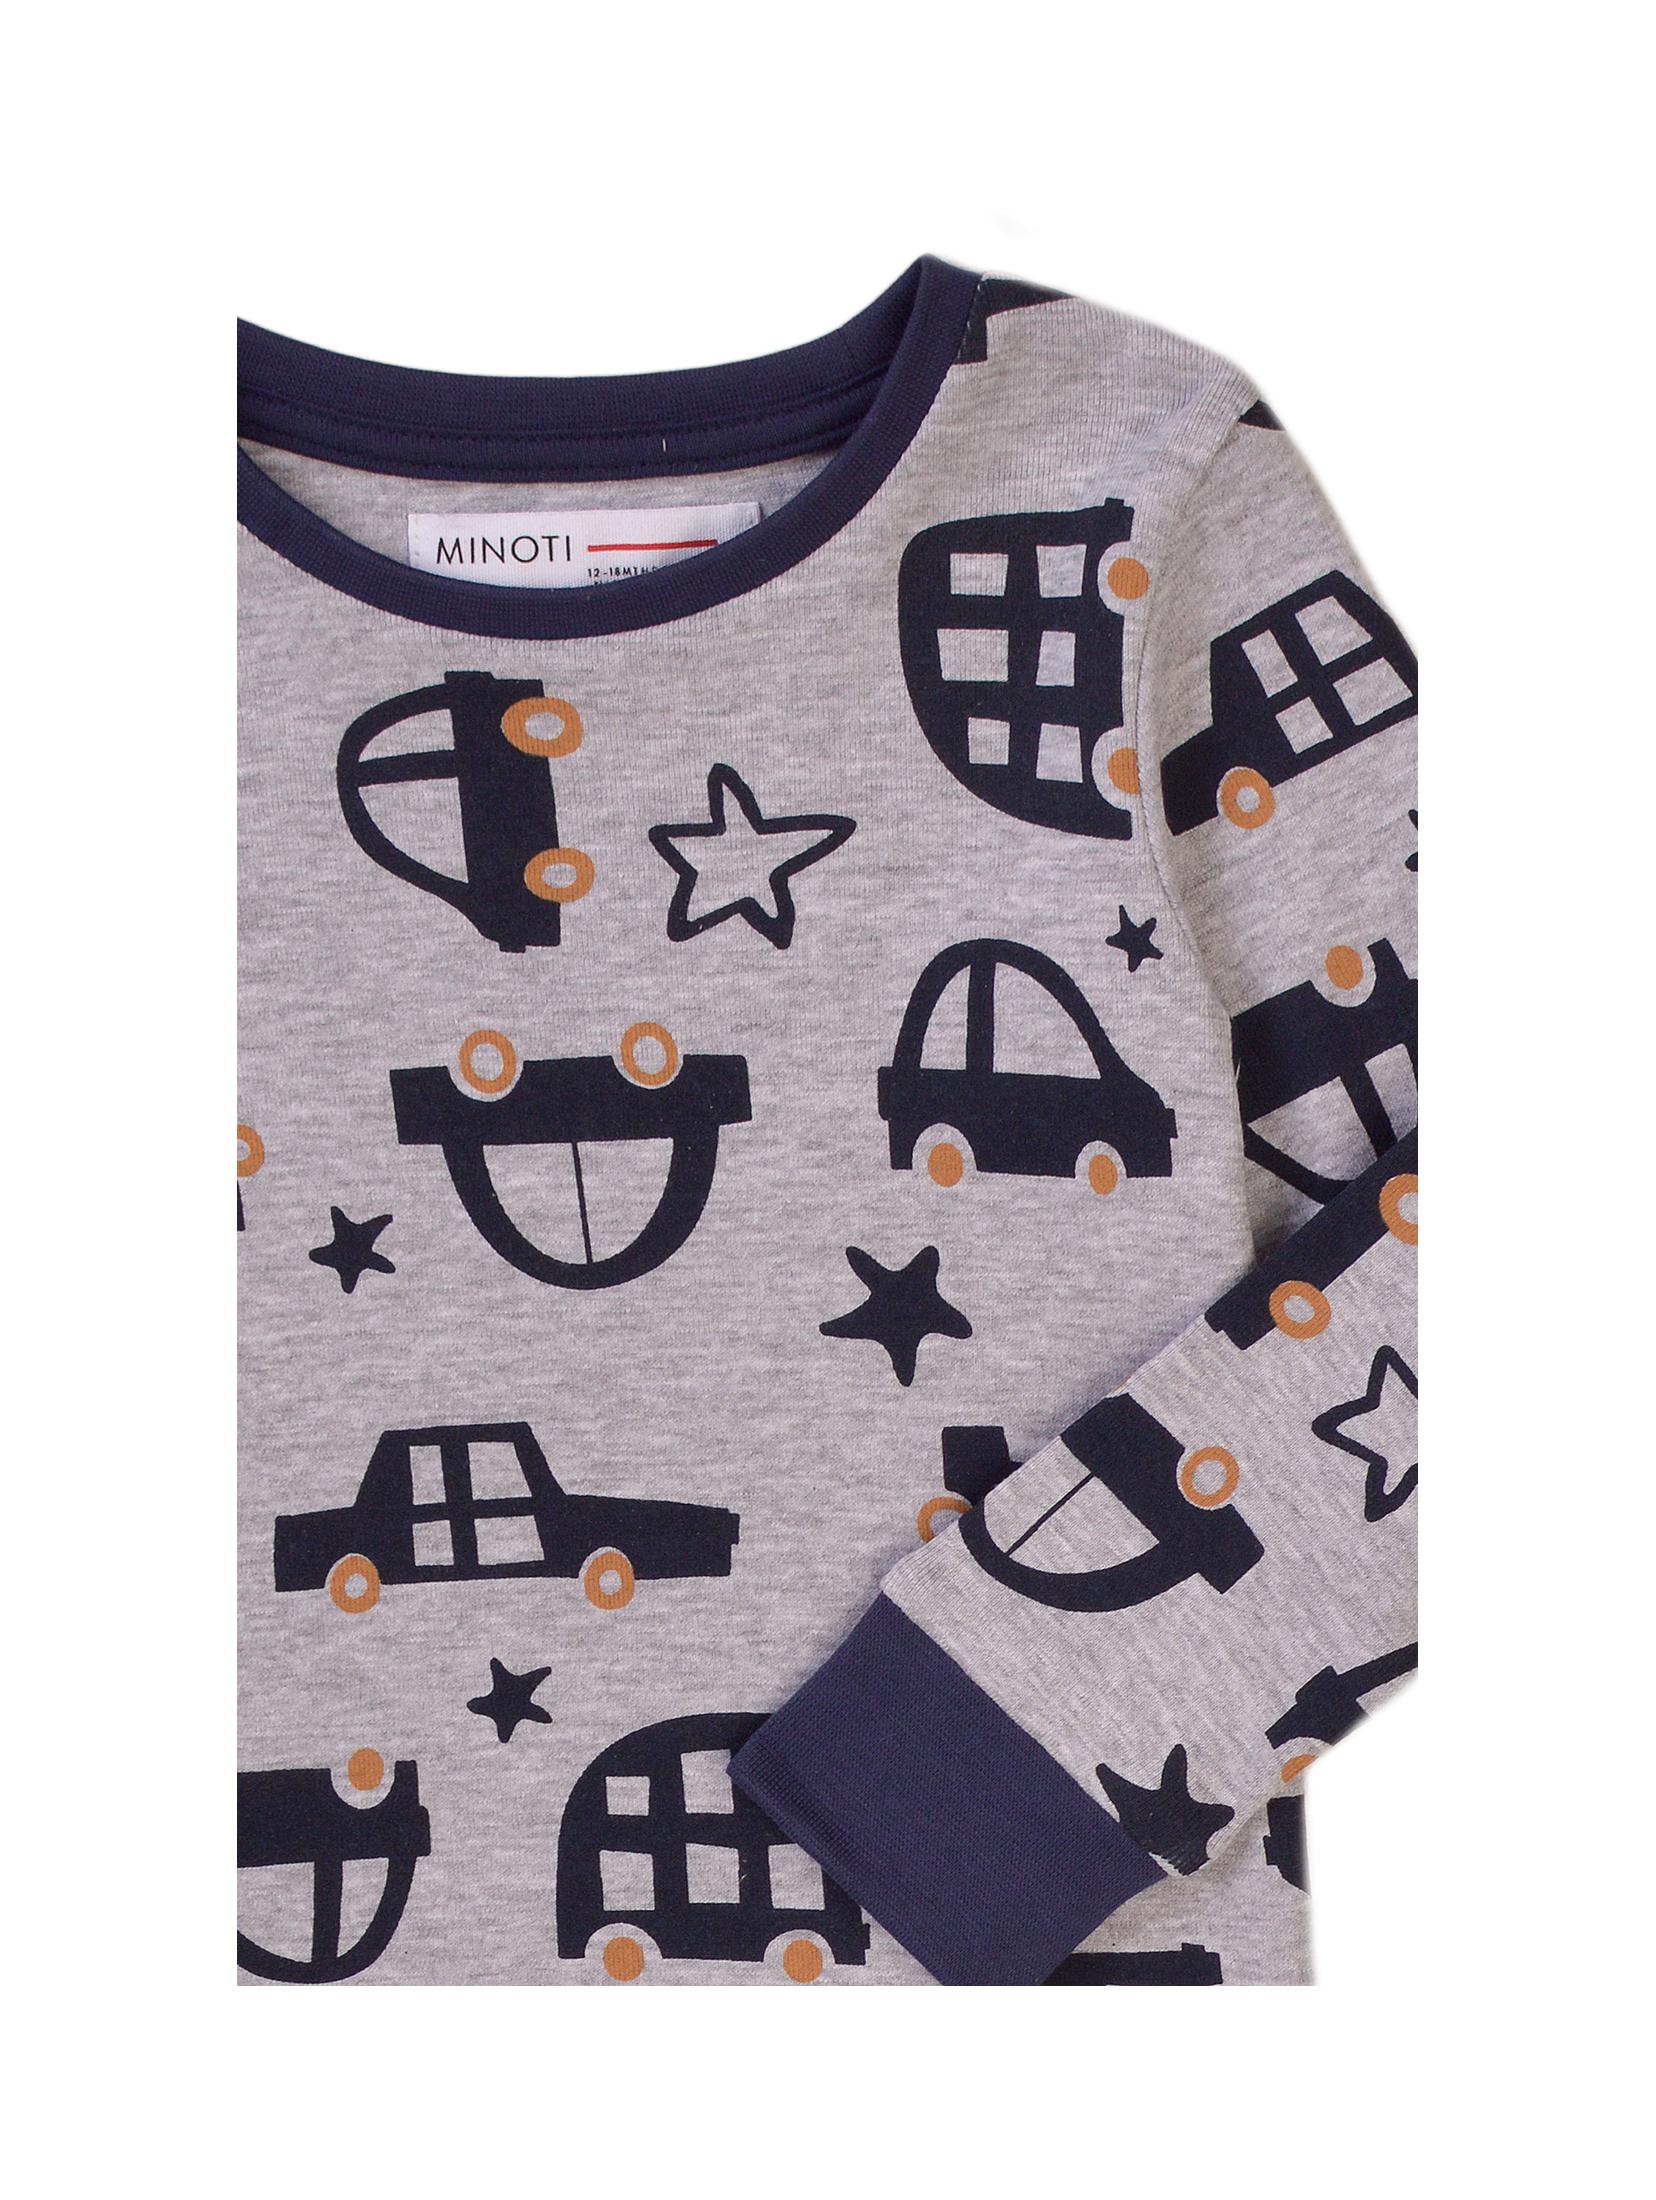 Piżama dla chłopca długi rękaw- szara w auta